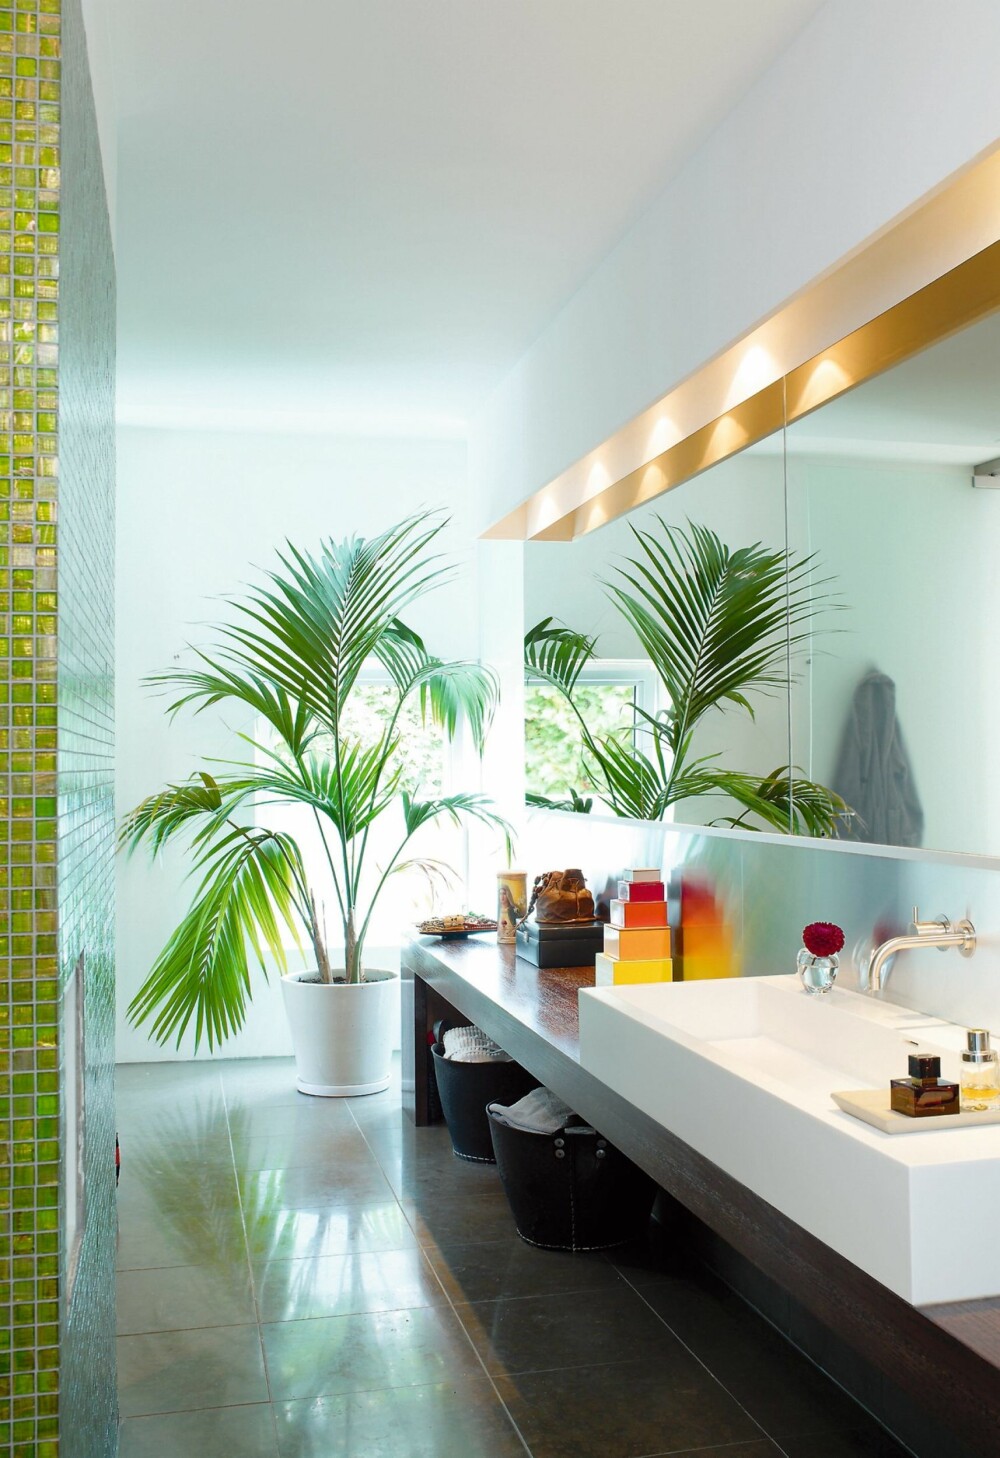 GRØNN LUNGE. Grønne planter trives på badet. og de er dekorative innslag. På gulvet er det lagt store fliser. Dette badet er stort, men smalt. Speilet på den ene siden gjør at det virker bredere.